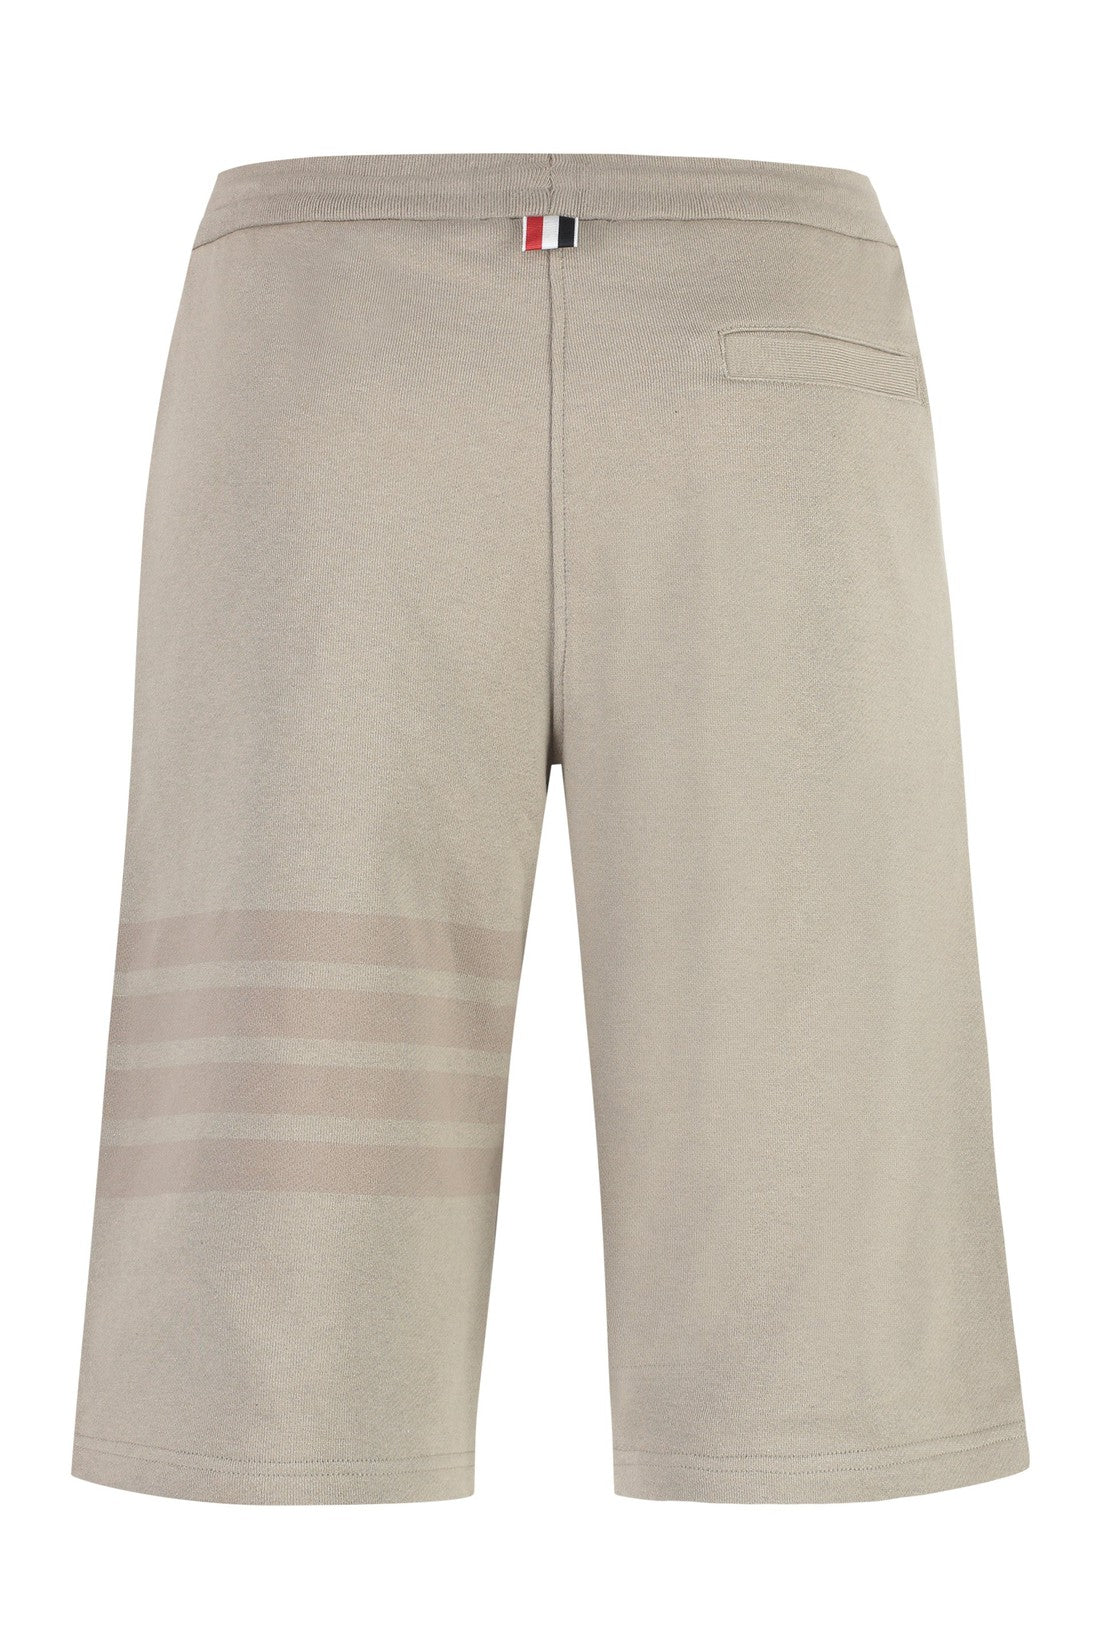 Thom Browne-OUTLET-SALE-Cotton shorts-ARCHIVIST